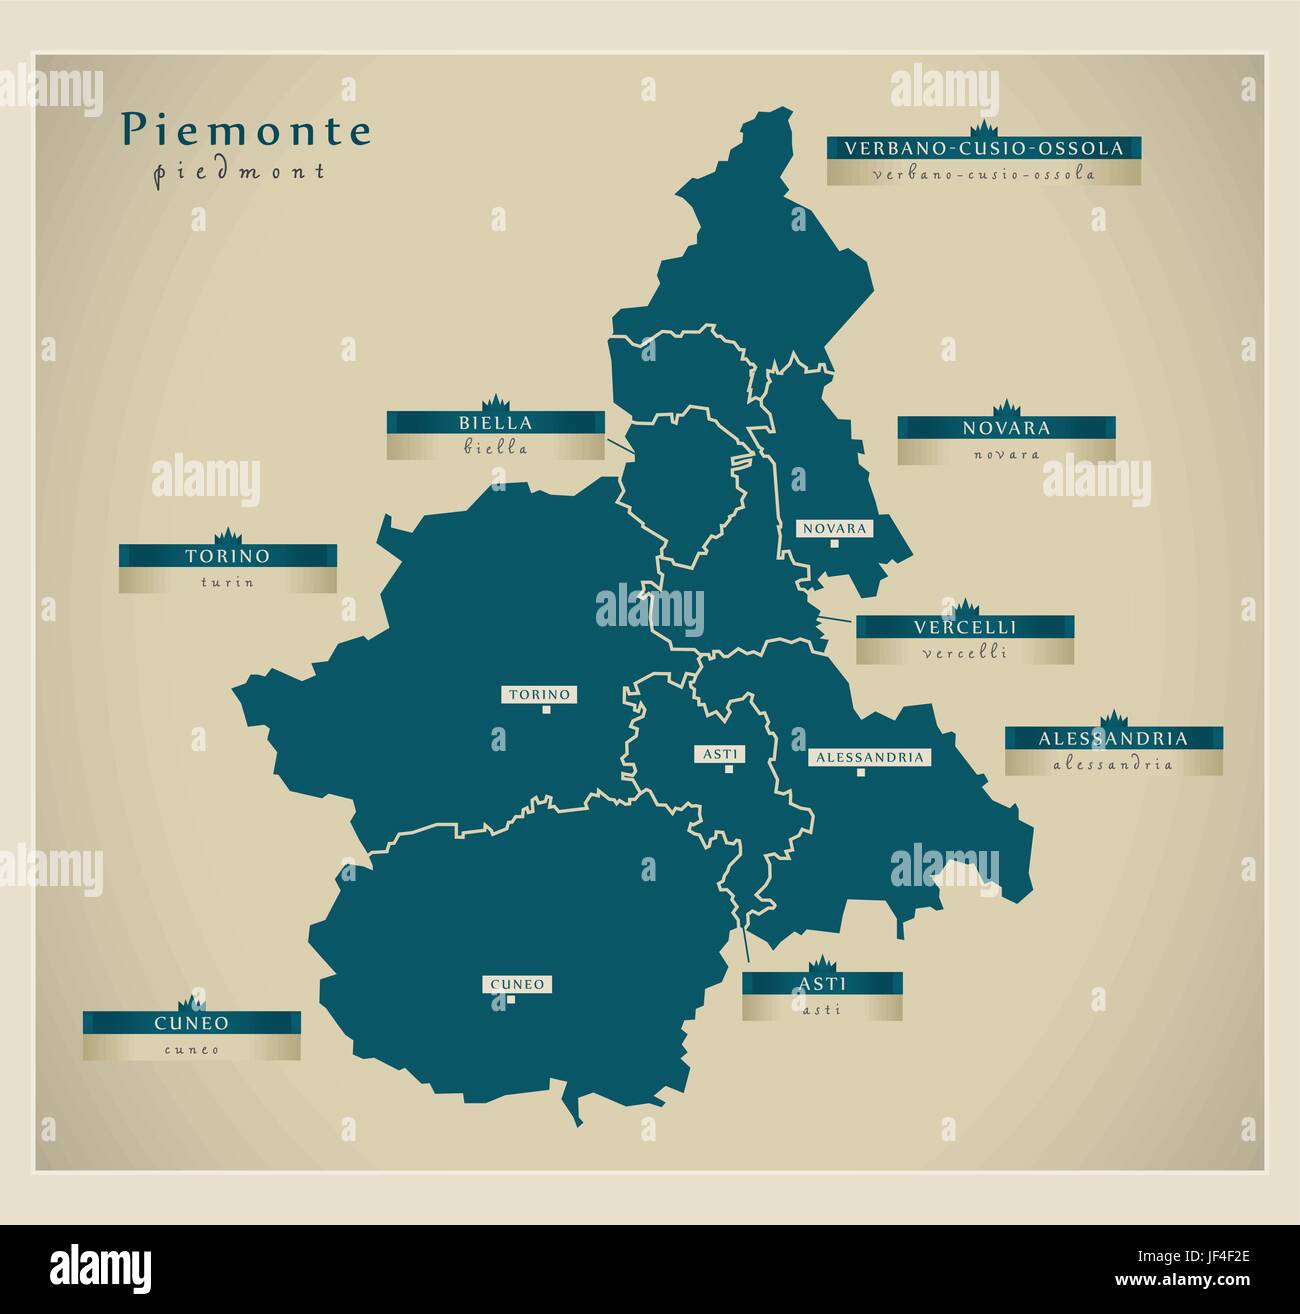 Mappa moderno - Piemonte it Illustrazione Vettoriale